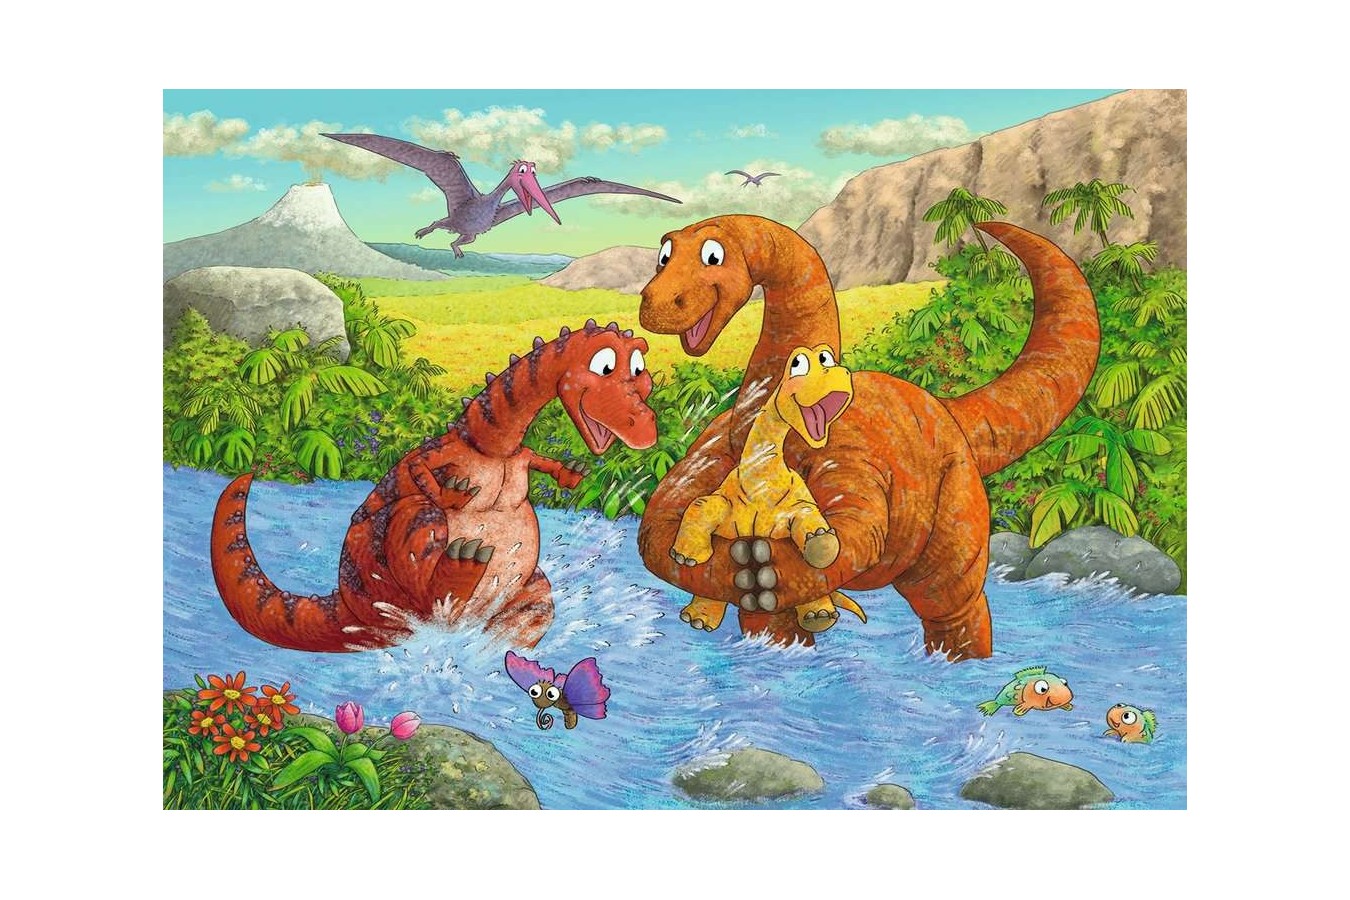 Puzzle Ravensburger - Dinozauri La Rau, 2x24 piese (05030)